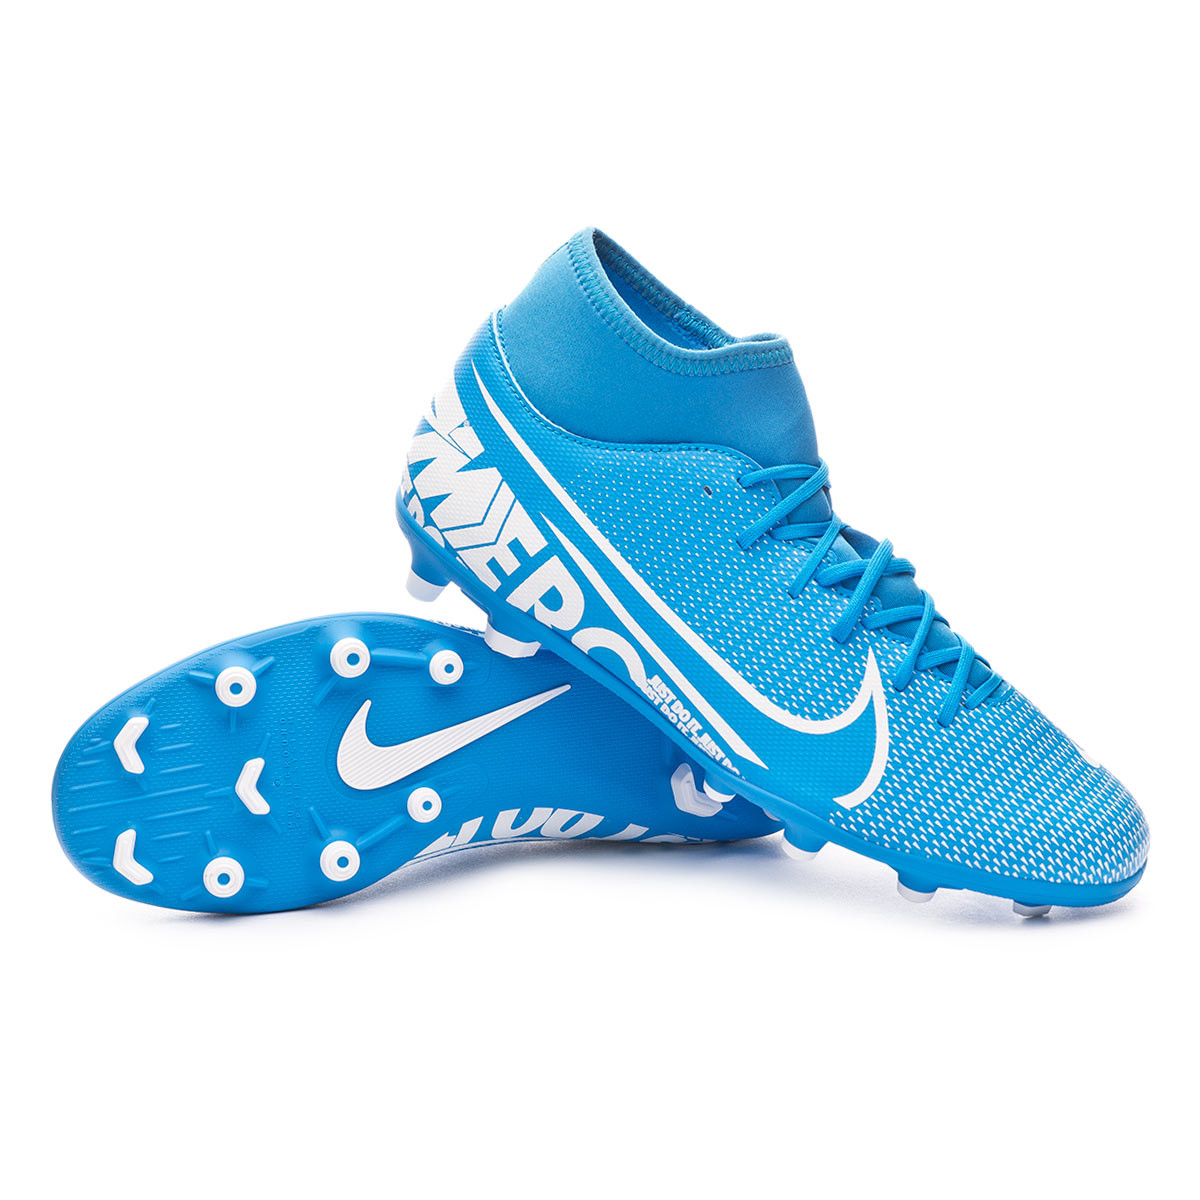 Football Boots Nike Mercurial Superfly Vii Club Fg Mg Blue Hero